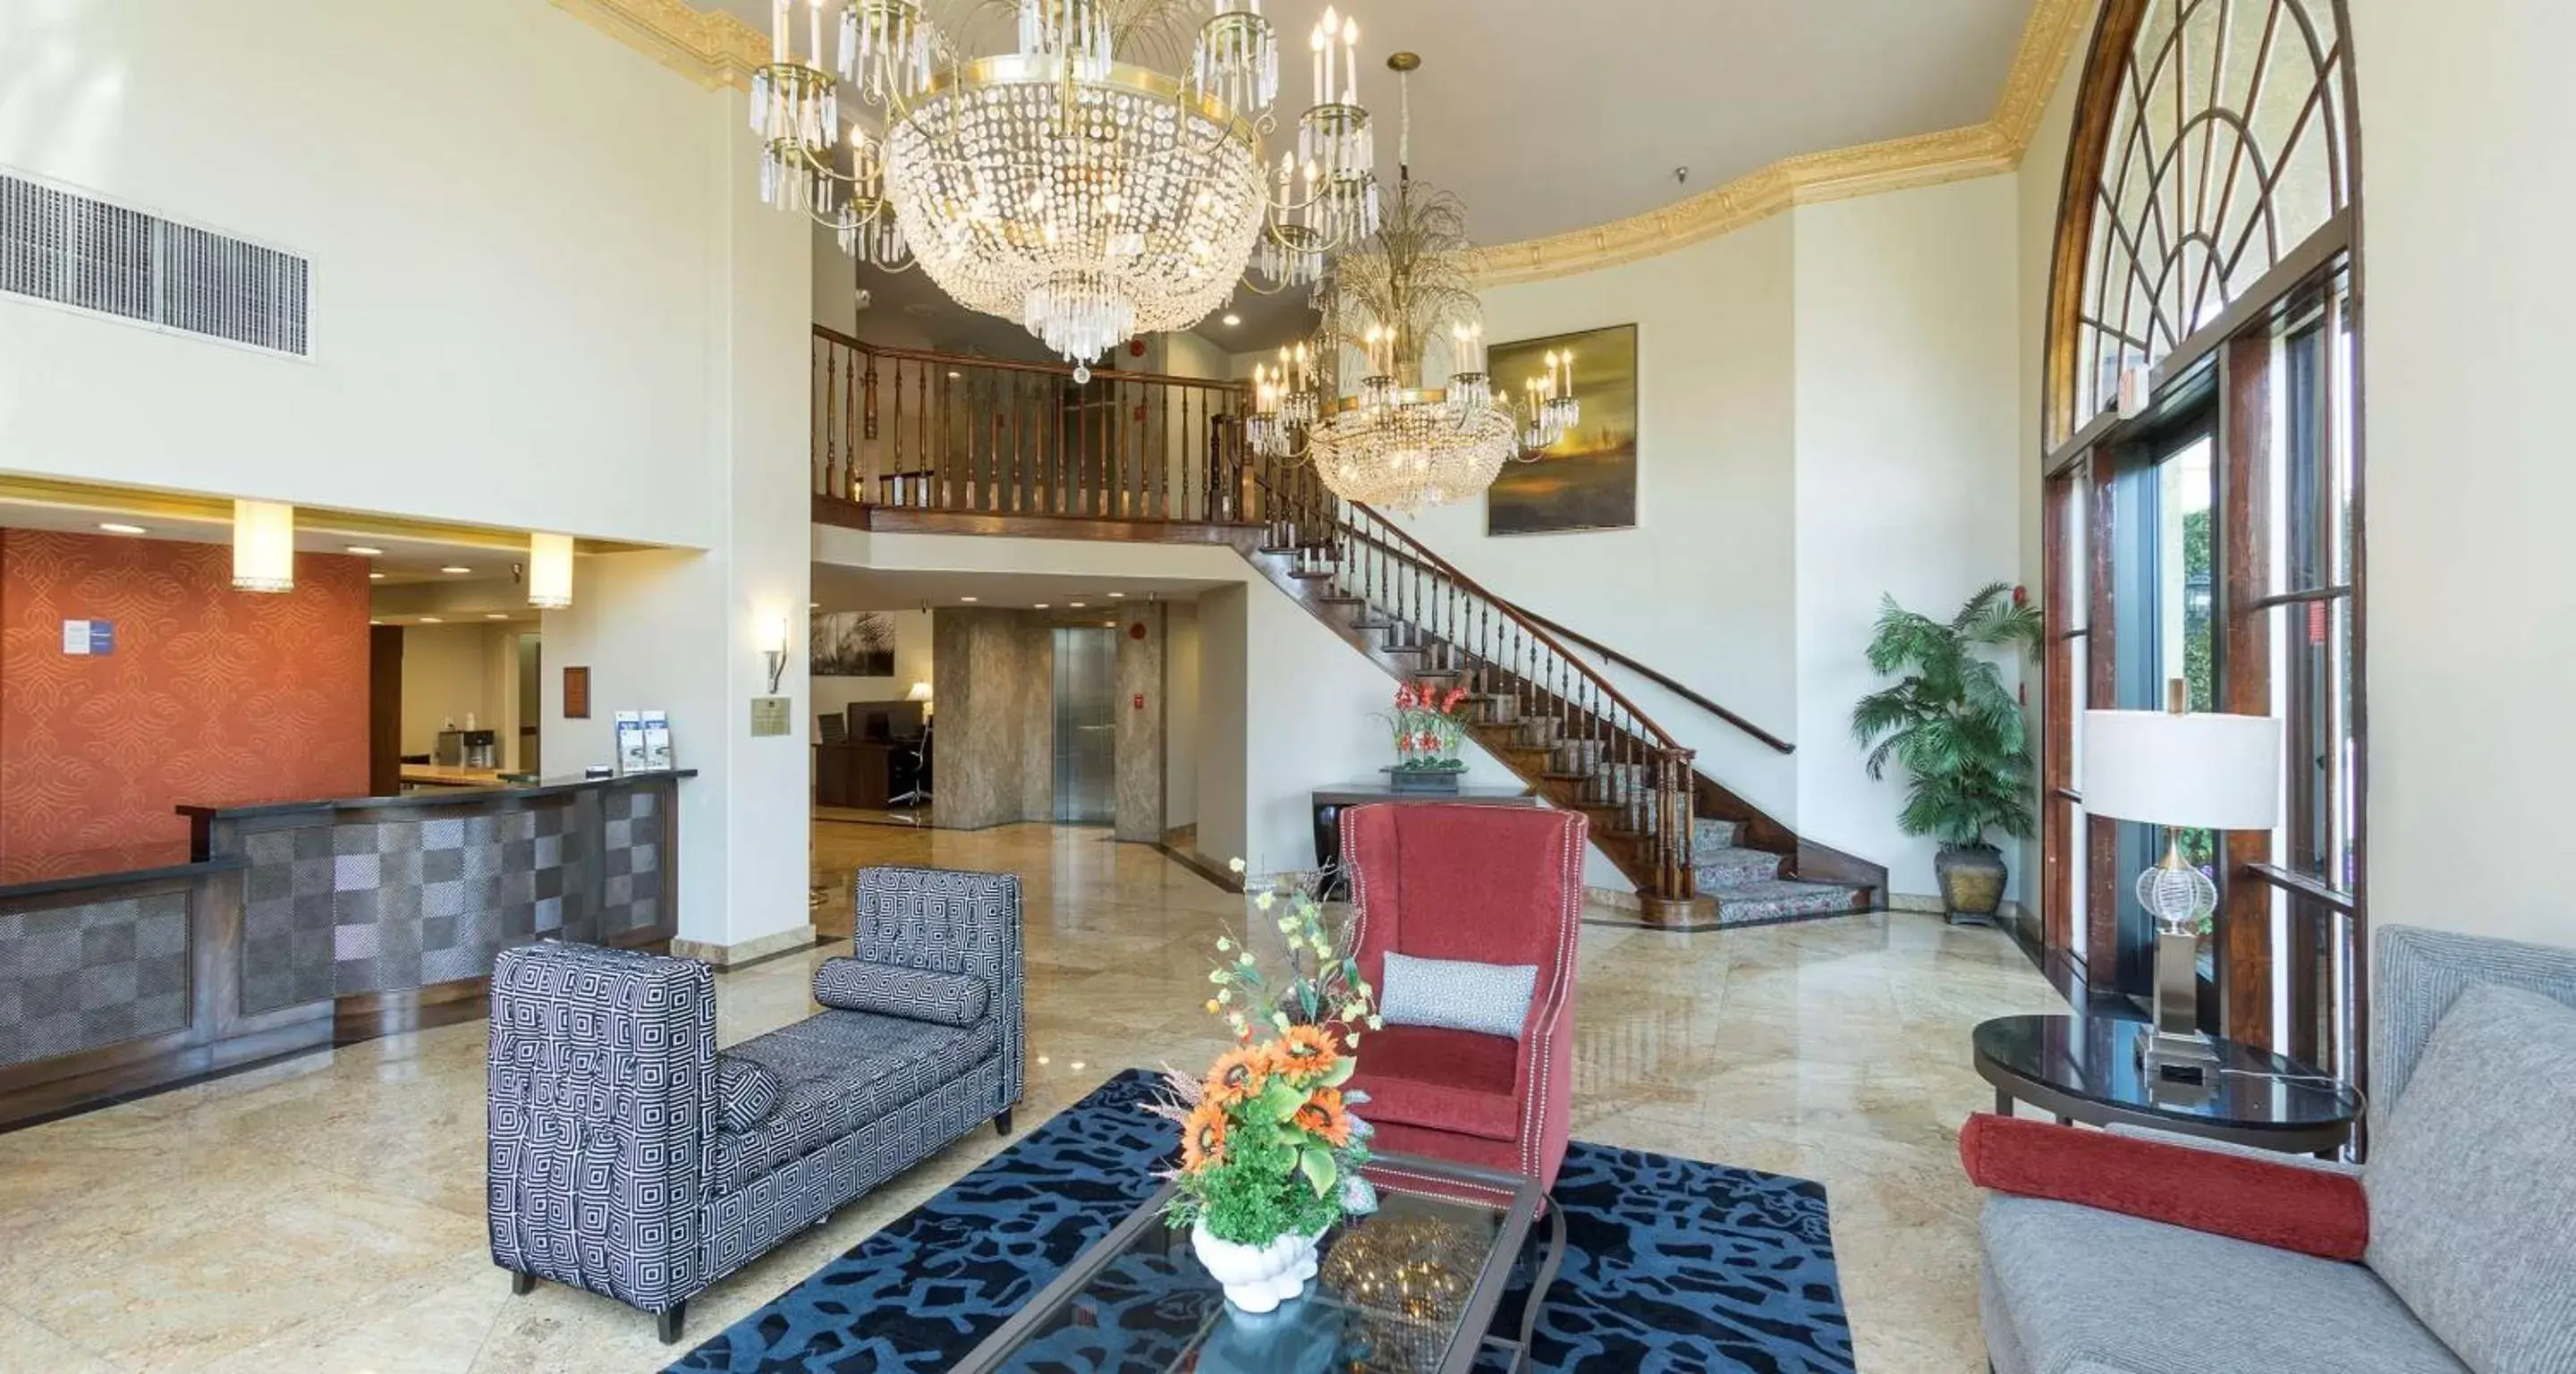 Lobby or reception, Lobby/Reception in Best Western Plus Newport Mesa Inn